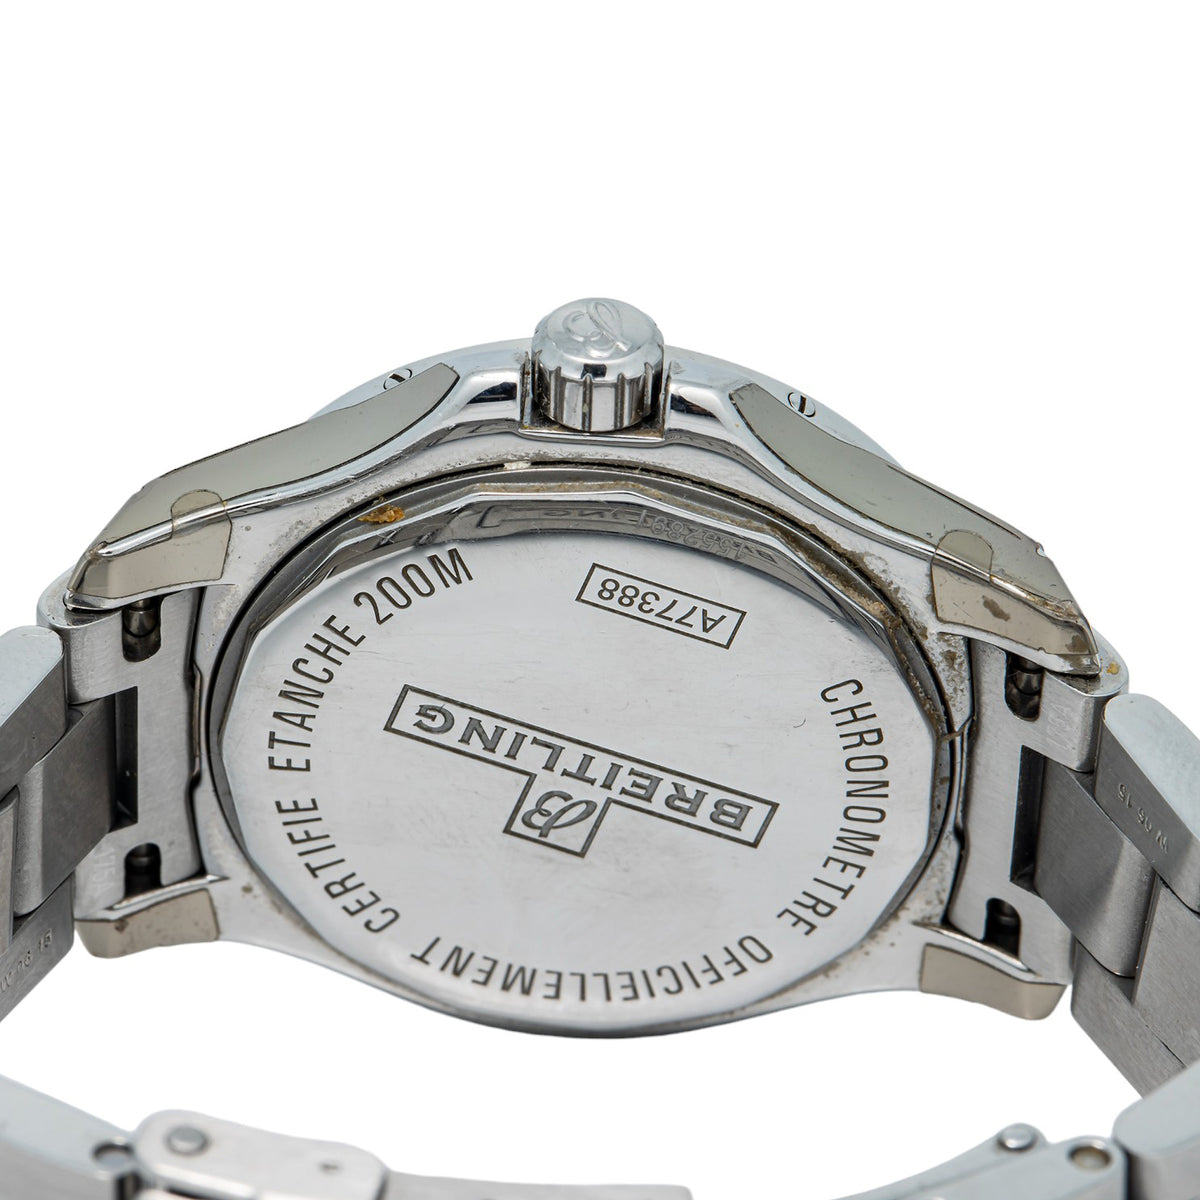 Breitling Colt A77388 Factory Diamond Bezel White Dial Quartz Ladies Watch 33mm